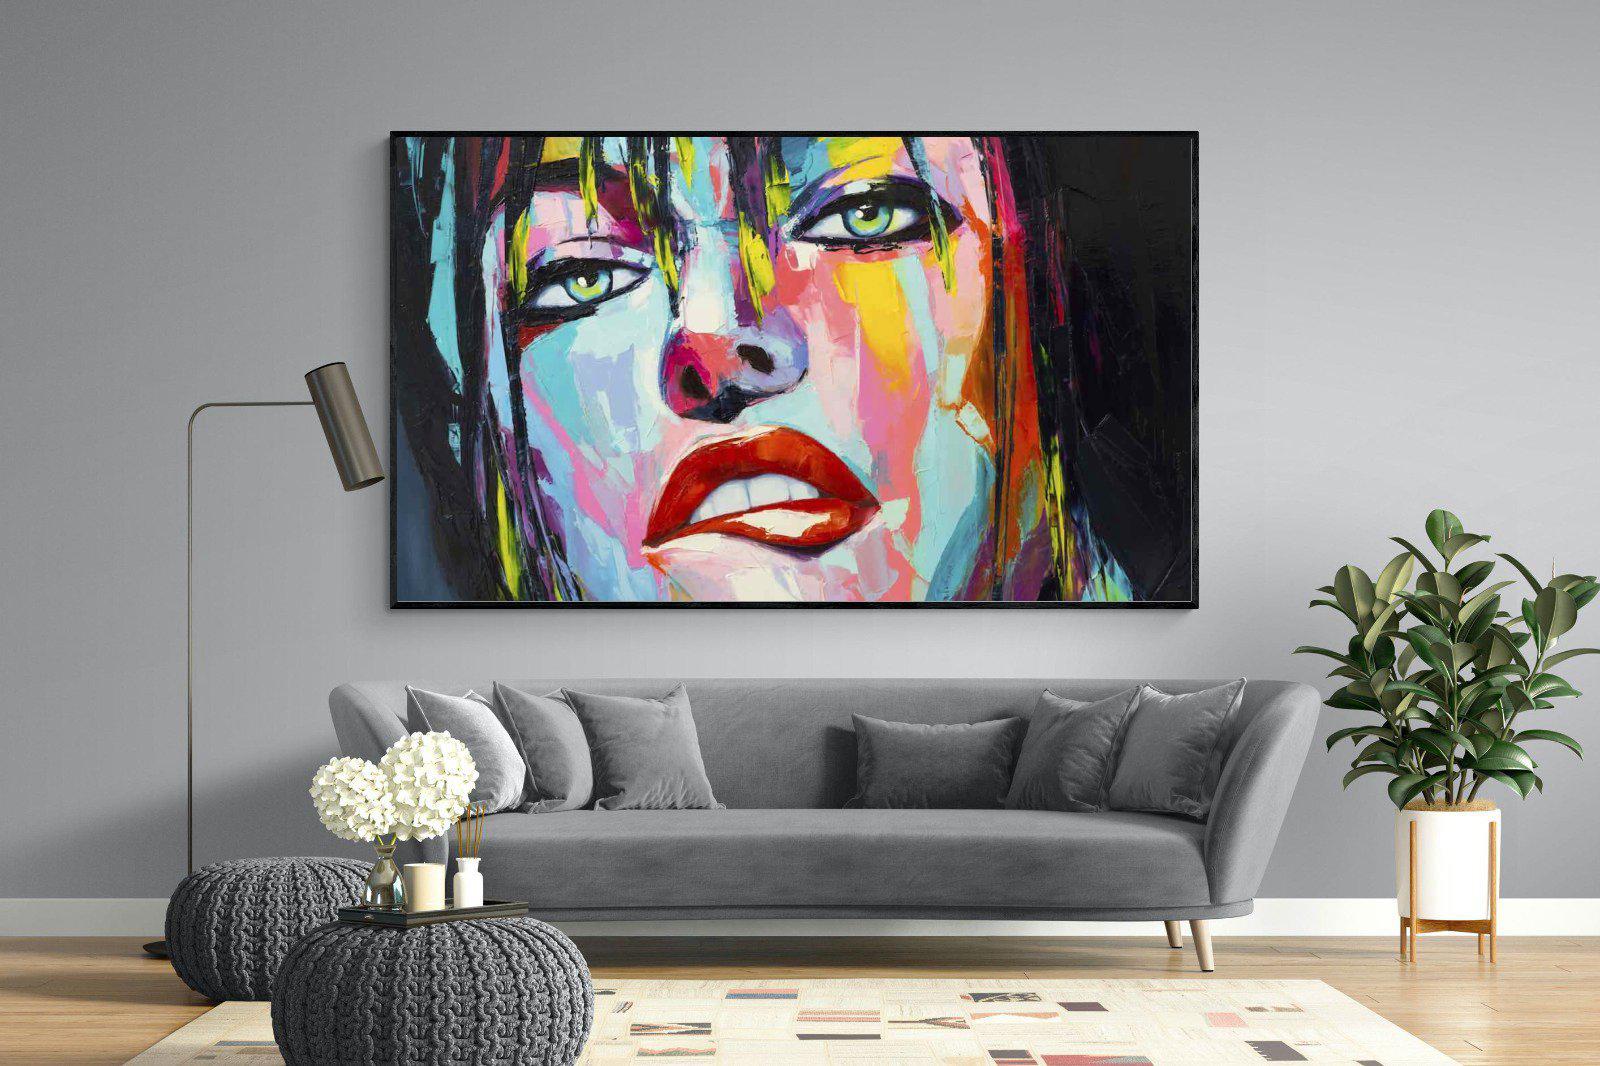 Risky-Wall_Art-220 x 130cm-Mounted Canvas-Black-Pixalot